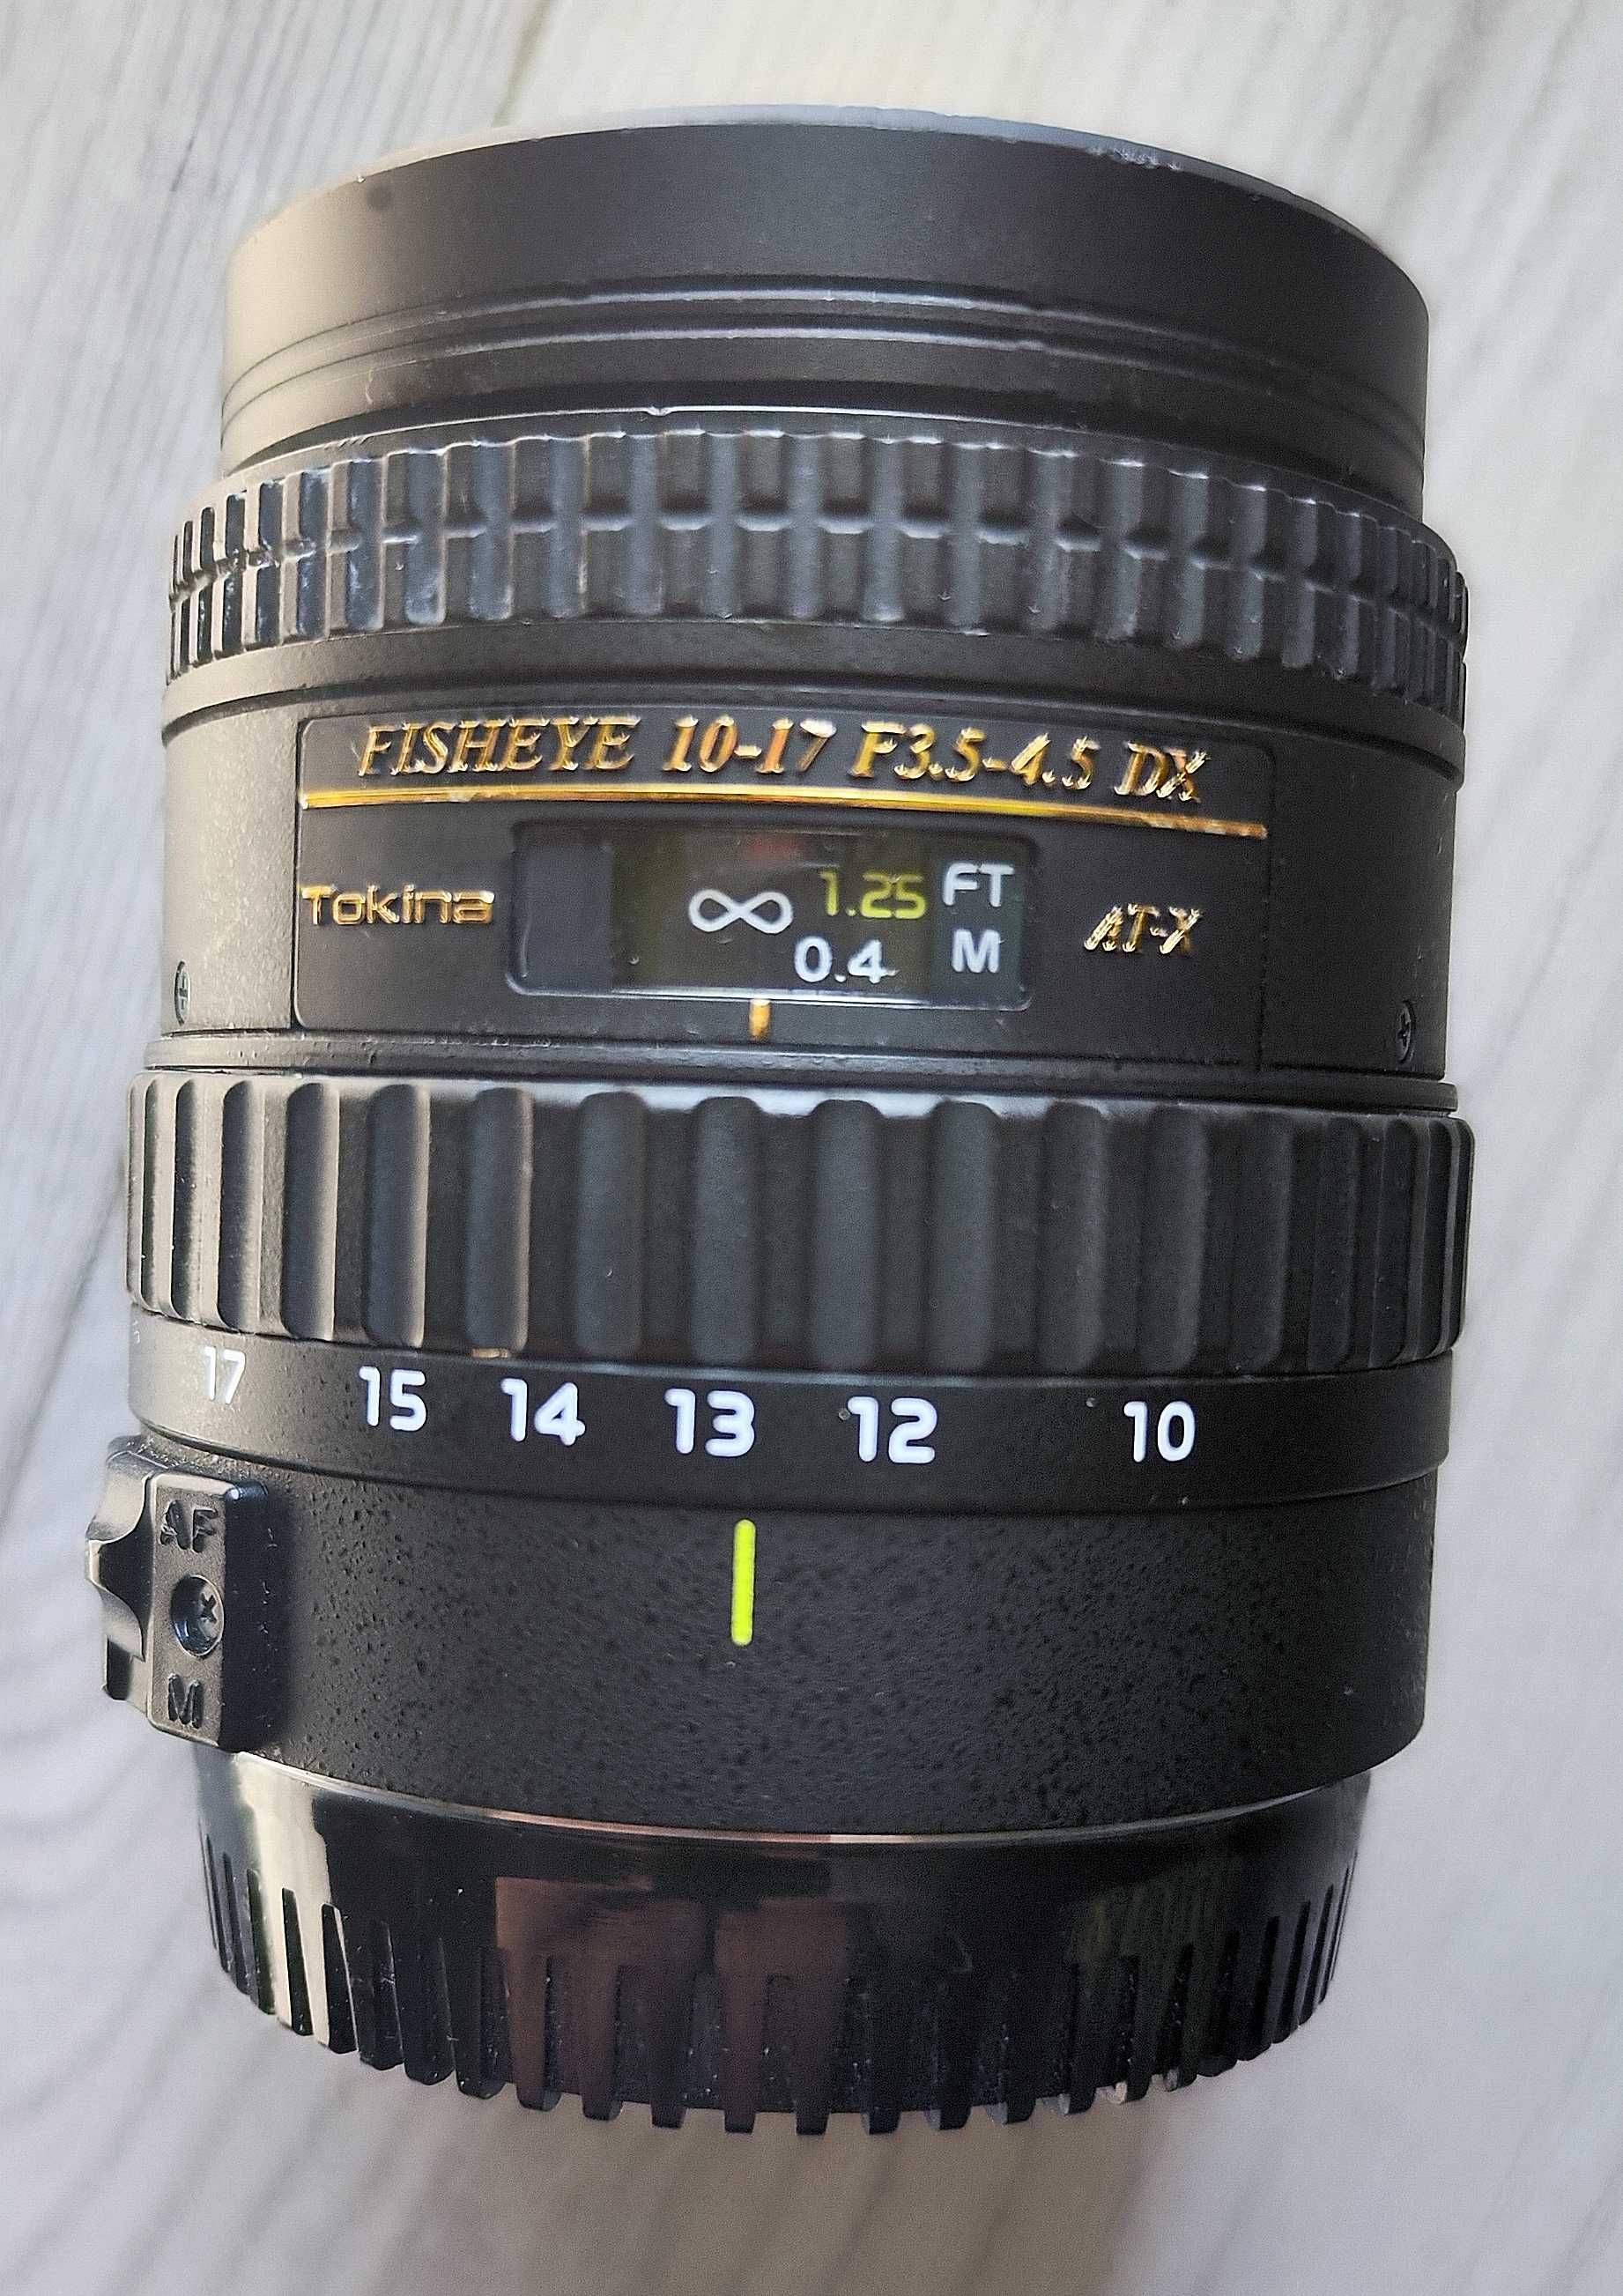 Obiektyw Tokina AT-X 10-17 mm f/3.5-4.5  DX  Fisheye Canon